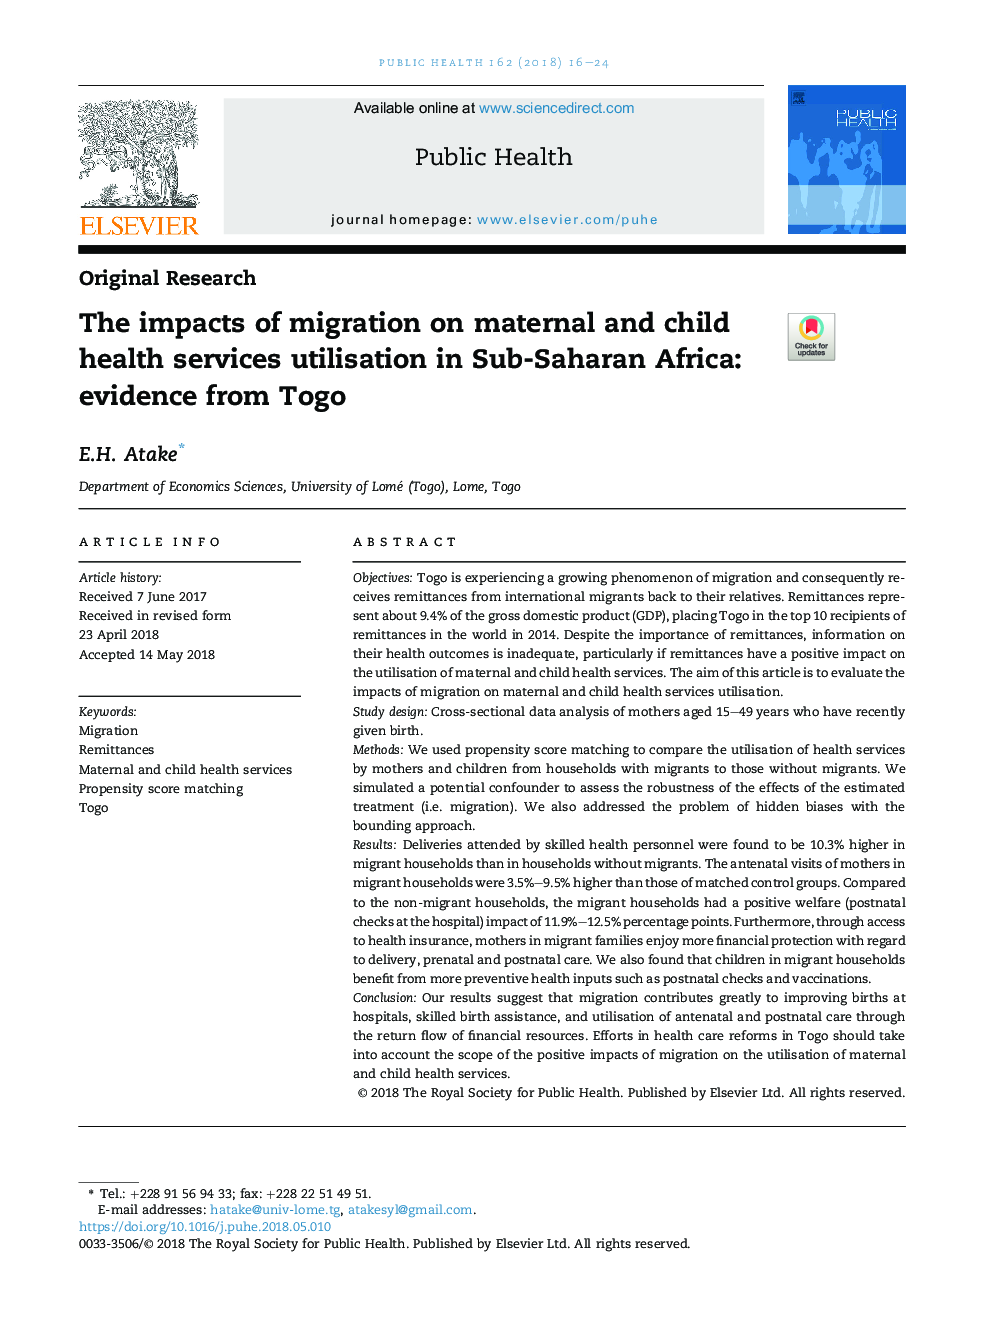 تأثیر مهاجرت در استفاده از خدمات بهداشتی و درمانی مادری و کودک در کشورهای جنوب صحرای آفریقا: شواهد از سوی توگو 